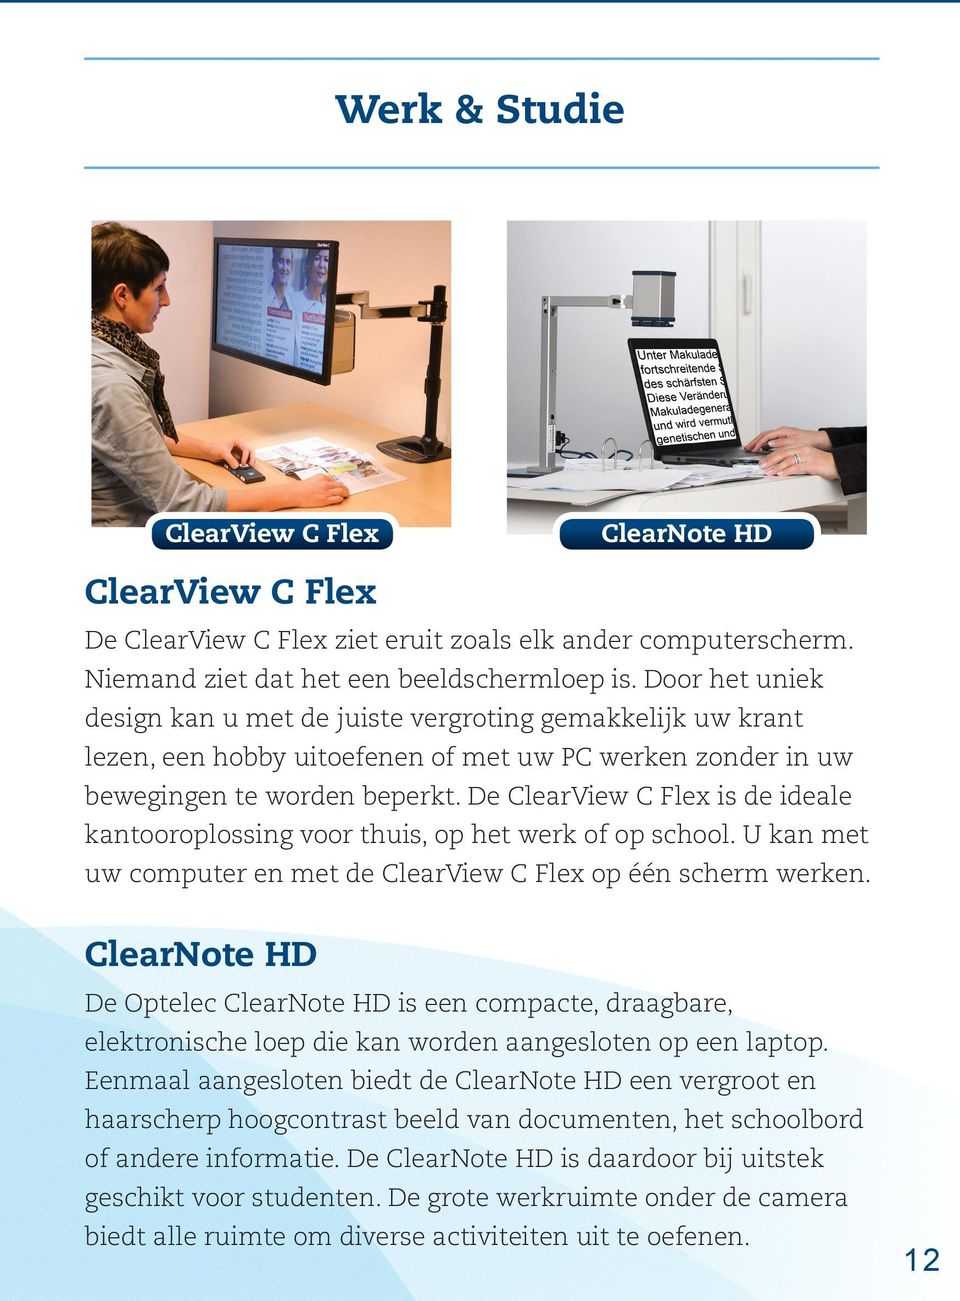 De ClearView C Flex is de ideale kantooroplossing voor thuis, op het werk of op school. U kan met uw computer en met de ClearView C Flex op één scherm werken.